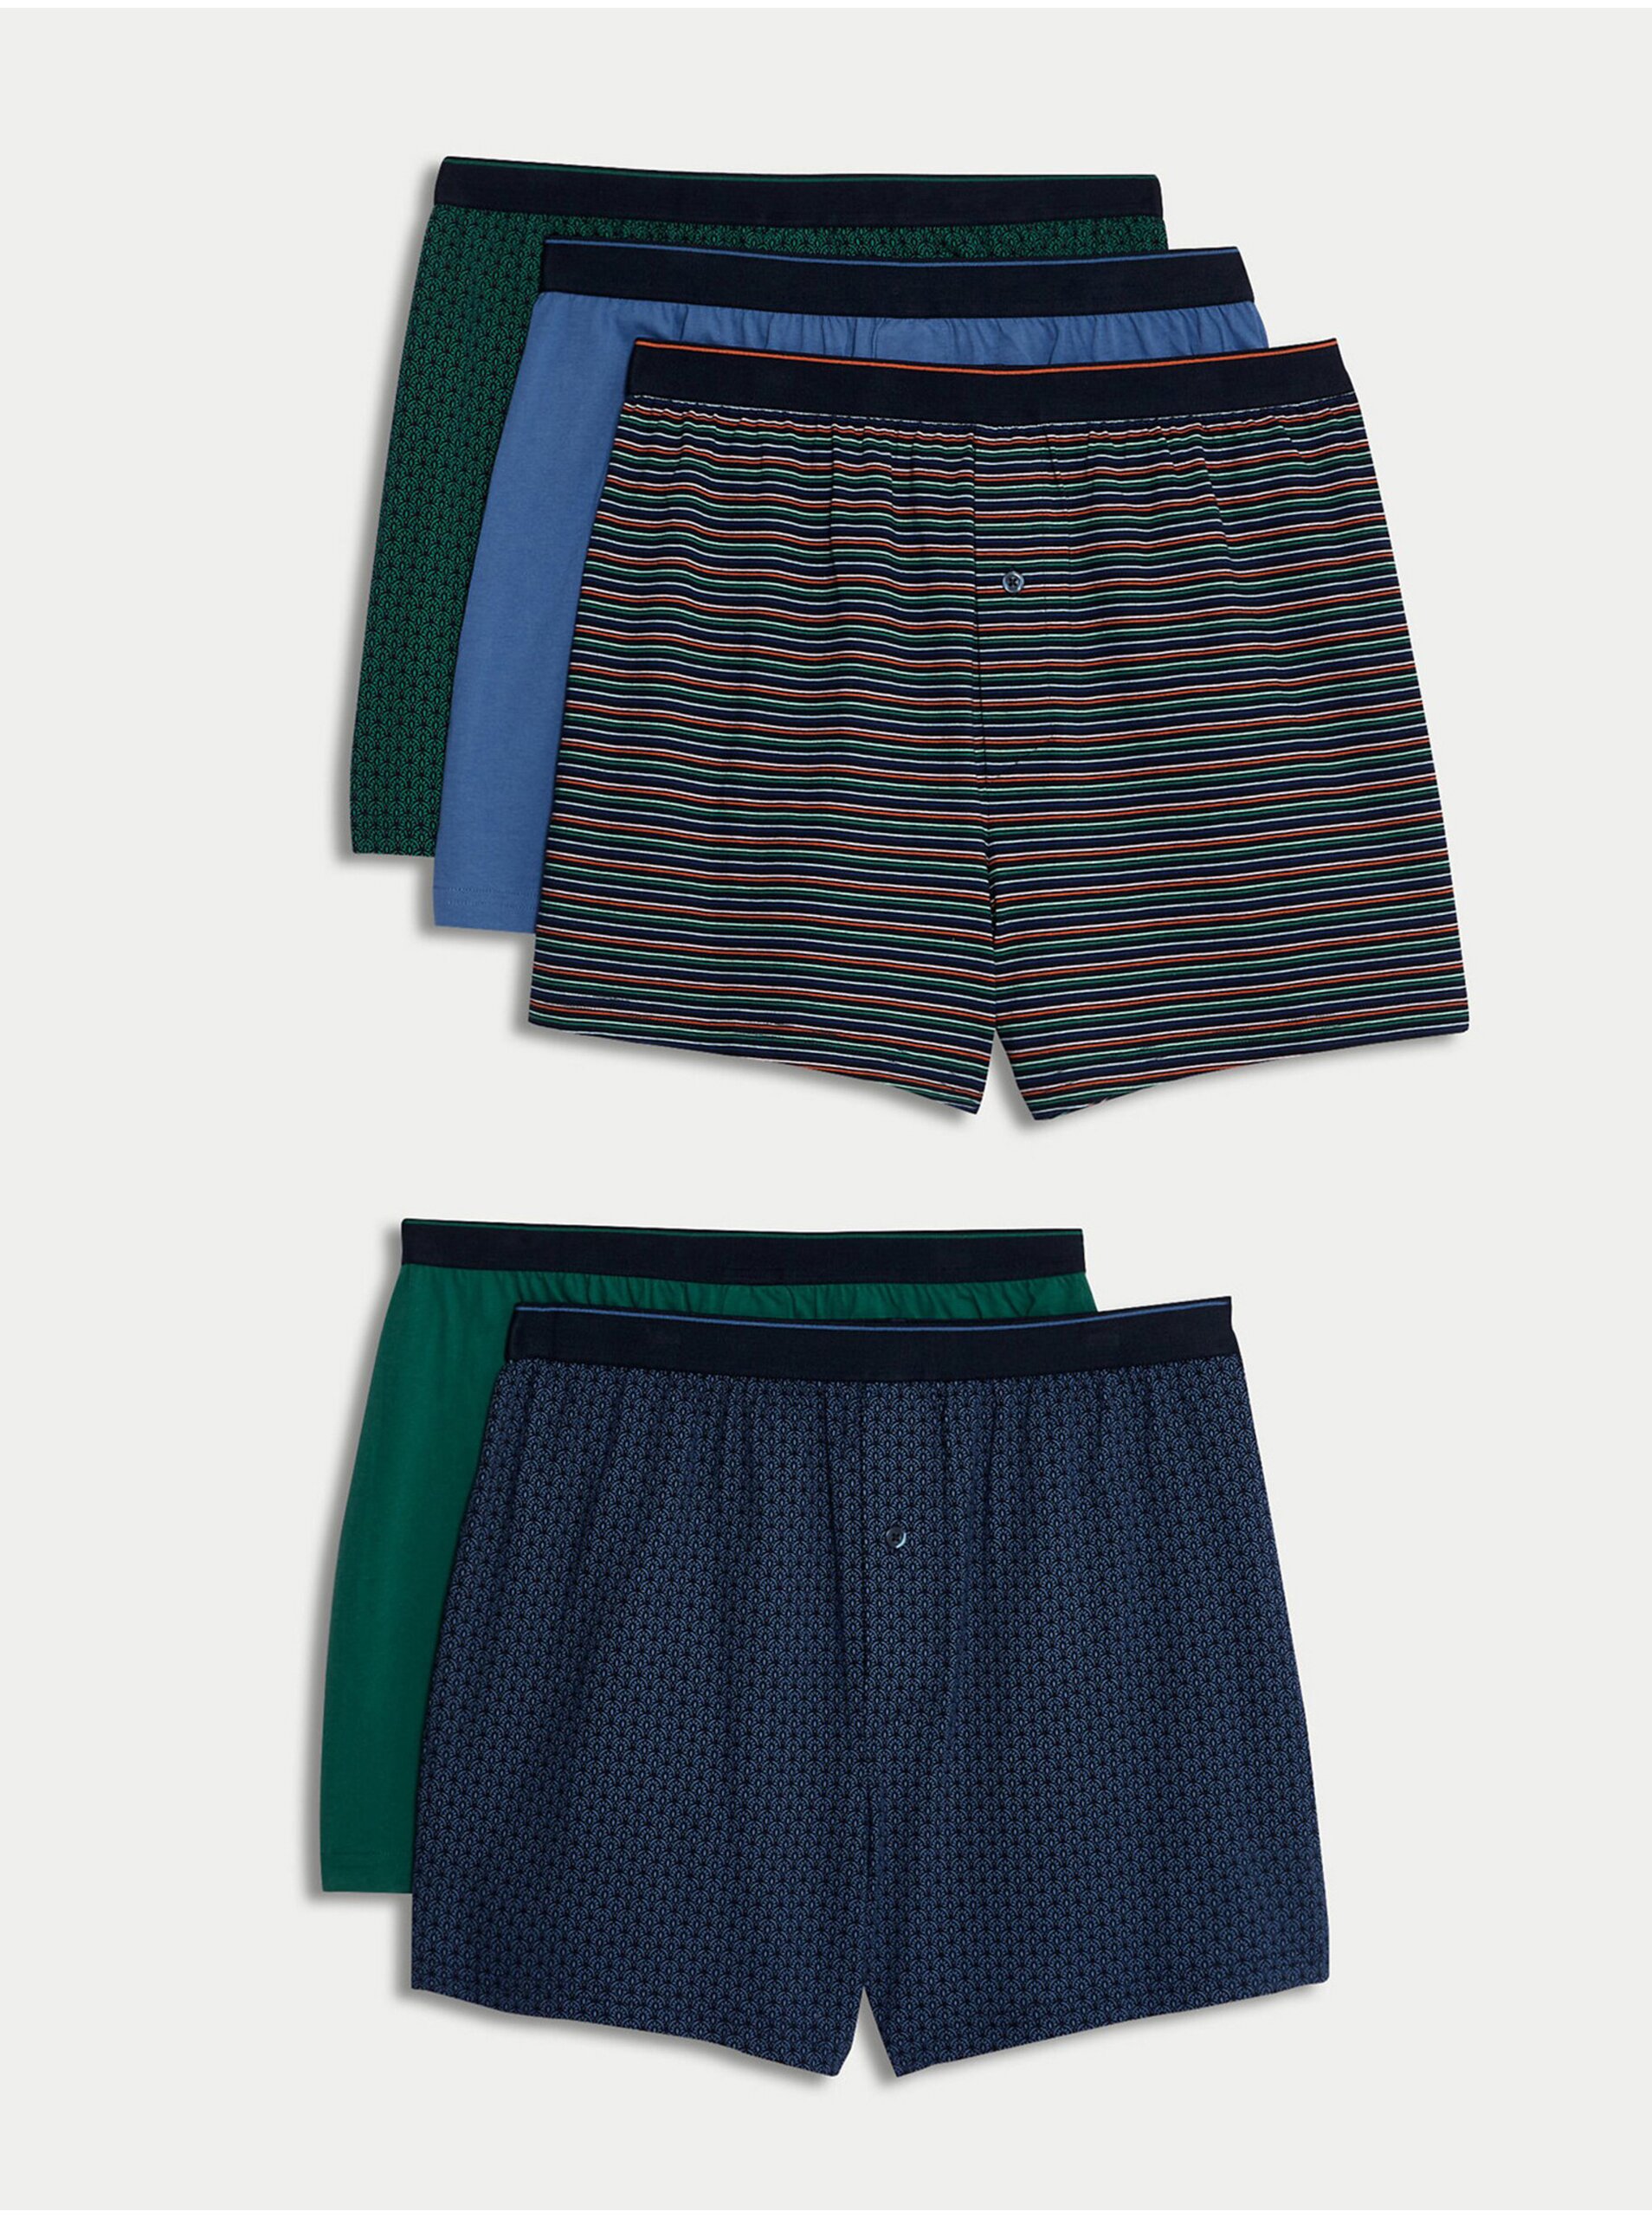 Lacno Súprava piatich pánskych vzorovaných trenírok v zelenej a modrej farbe Marks & Spencer Cool & Fresh™